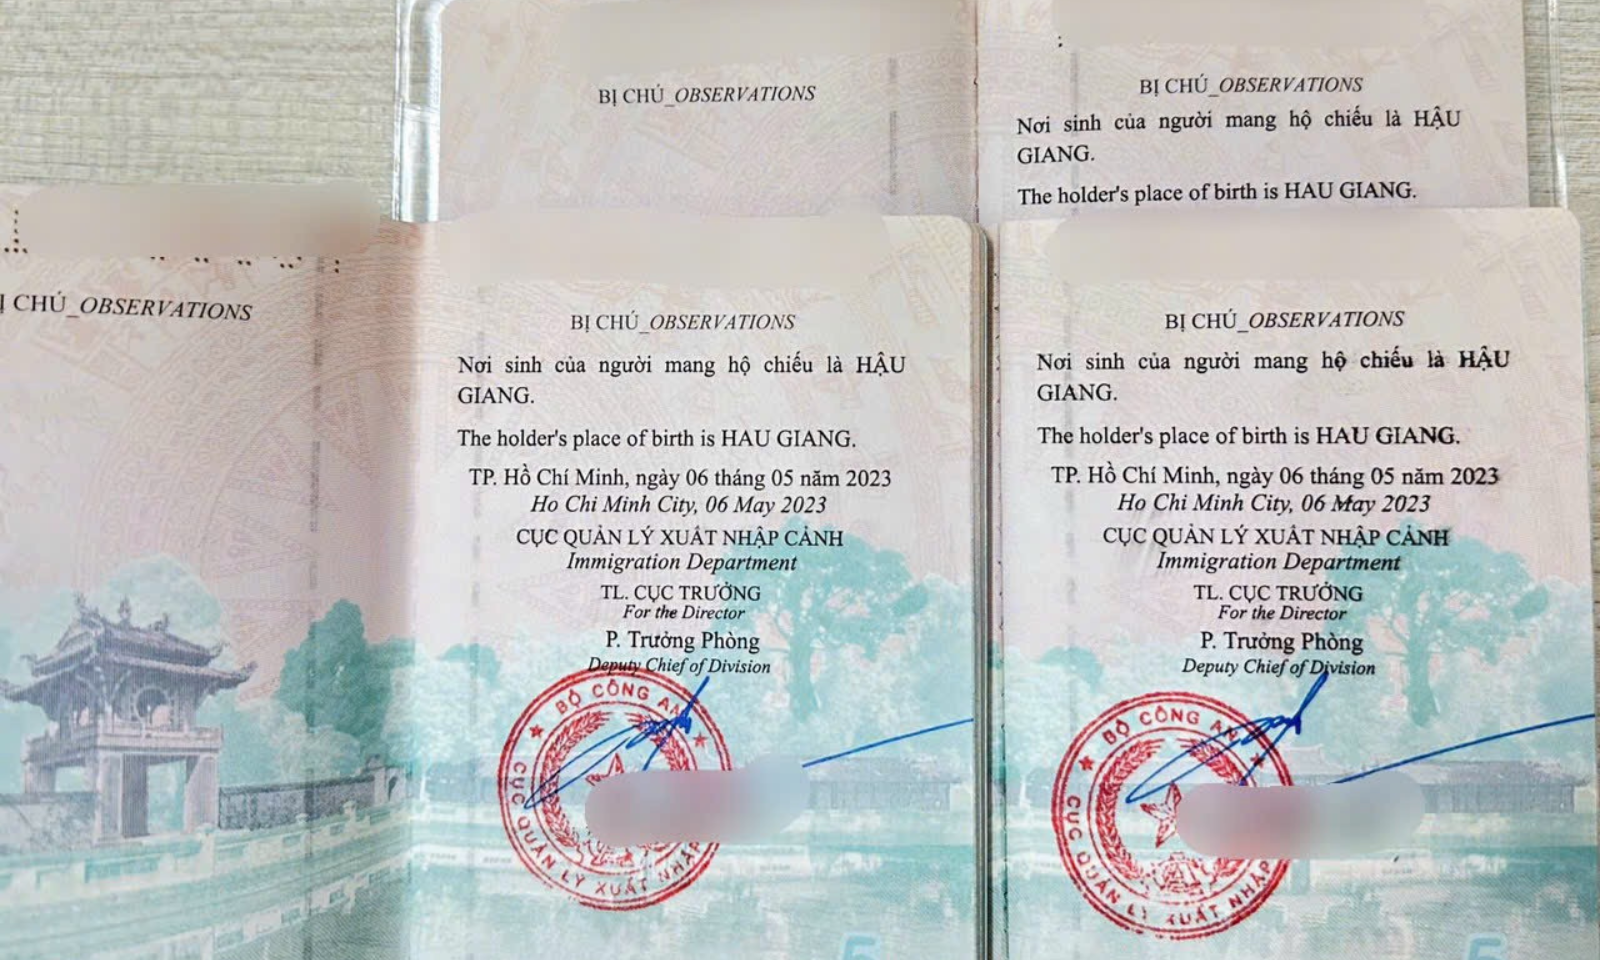 Hướng dẫn bổ sung bị chú nơi sinh vào hộ chiếu